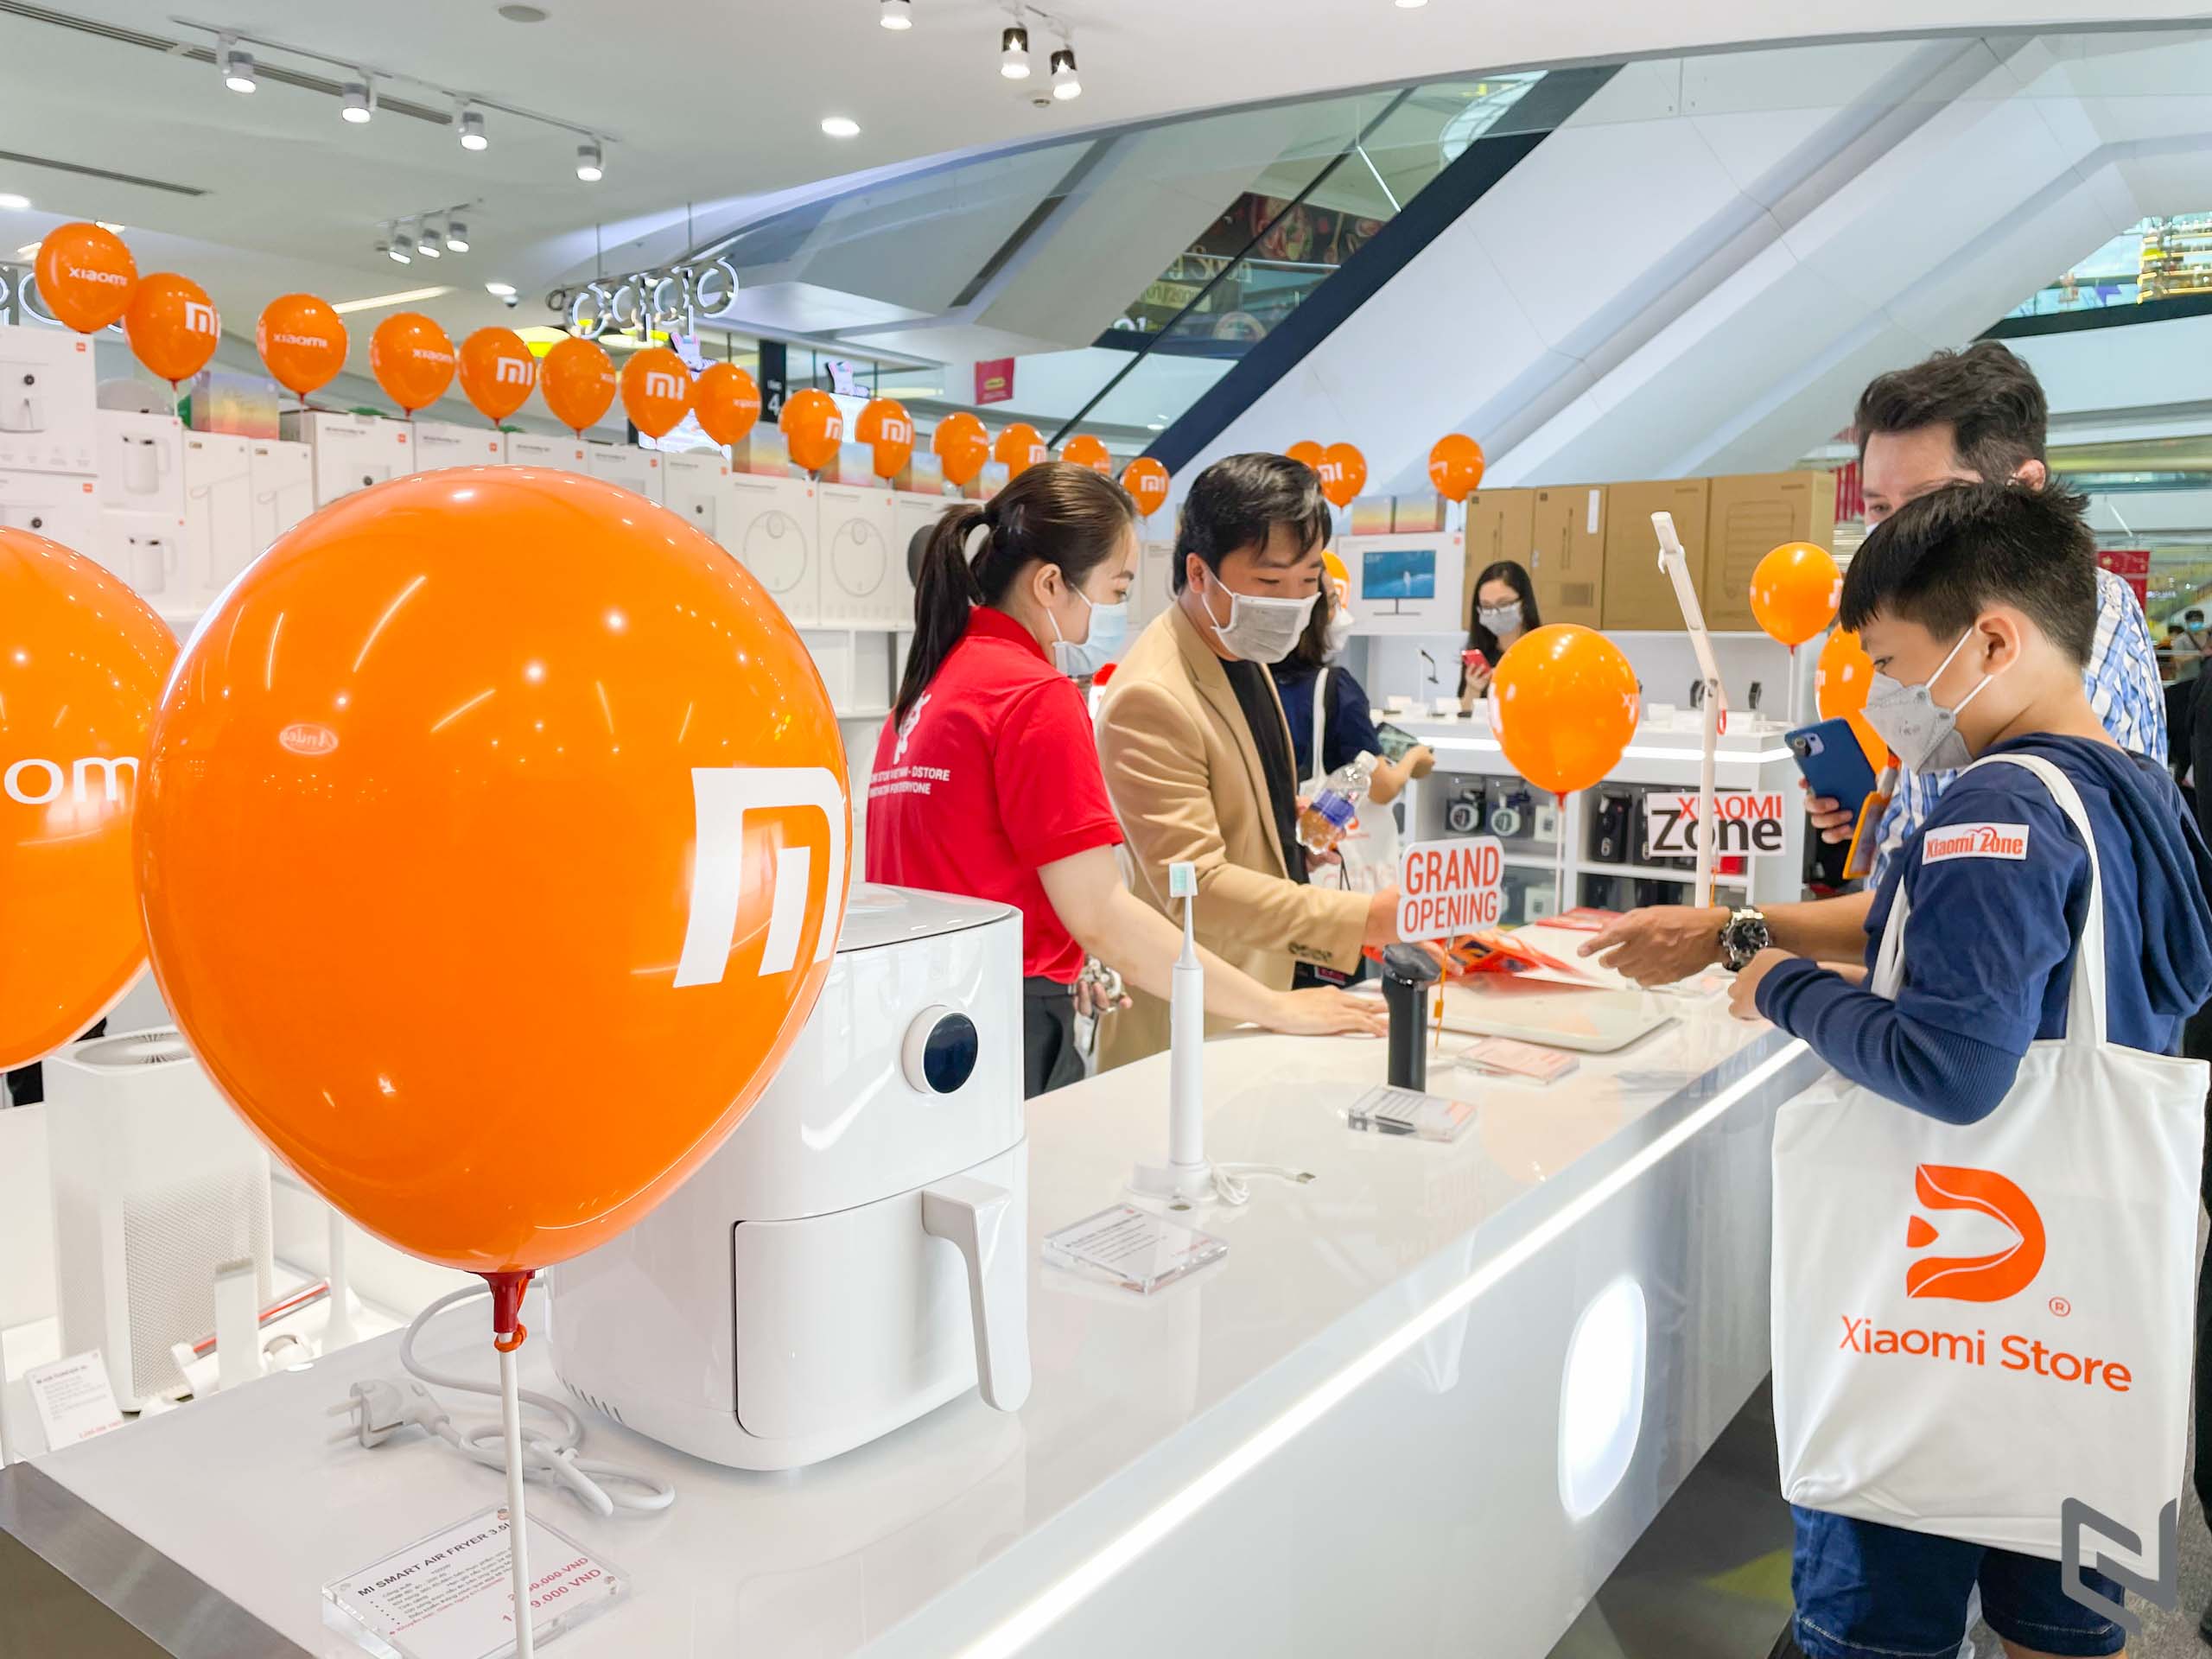 Khai trương Xiaomi Zone - Cửa hàng Xiaomi chính hãng thứ 5 được vận hành bởi Digiworld tại Việt Nam